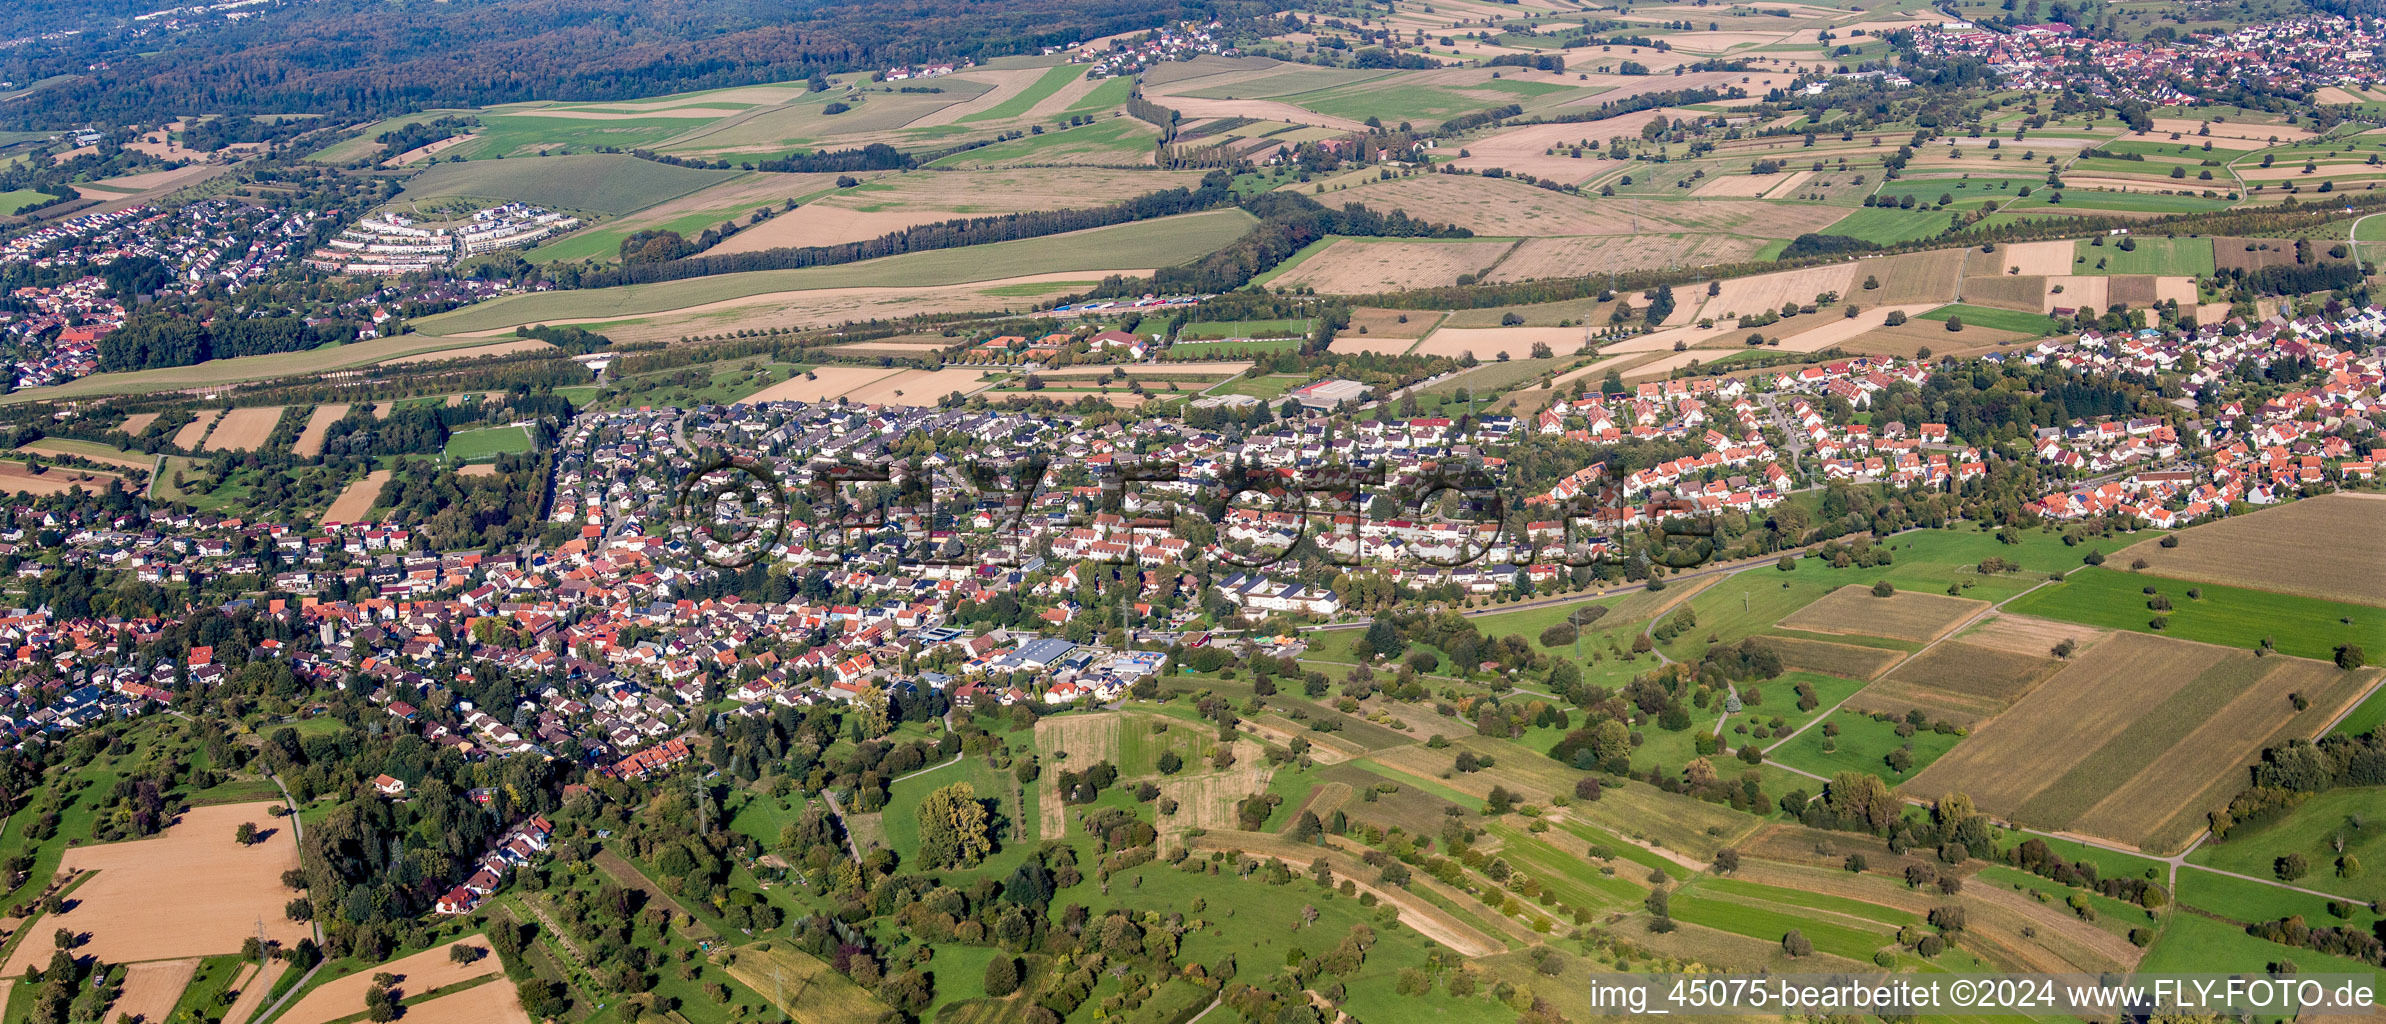 Vue aérienne de Vue panoramique en perspective des rues et des maisons des quartiers résidentiels à le quartier Grünwettersbach in Karlsruhe dans le département Bade-Wurtemberg, Allemagne